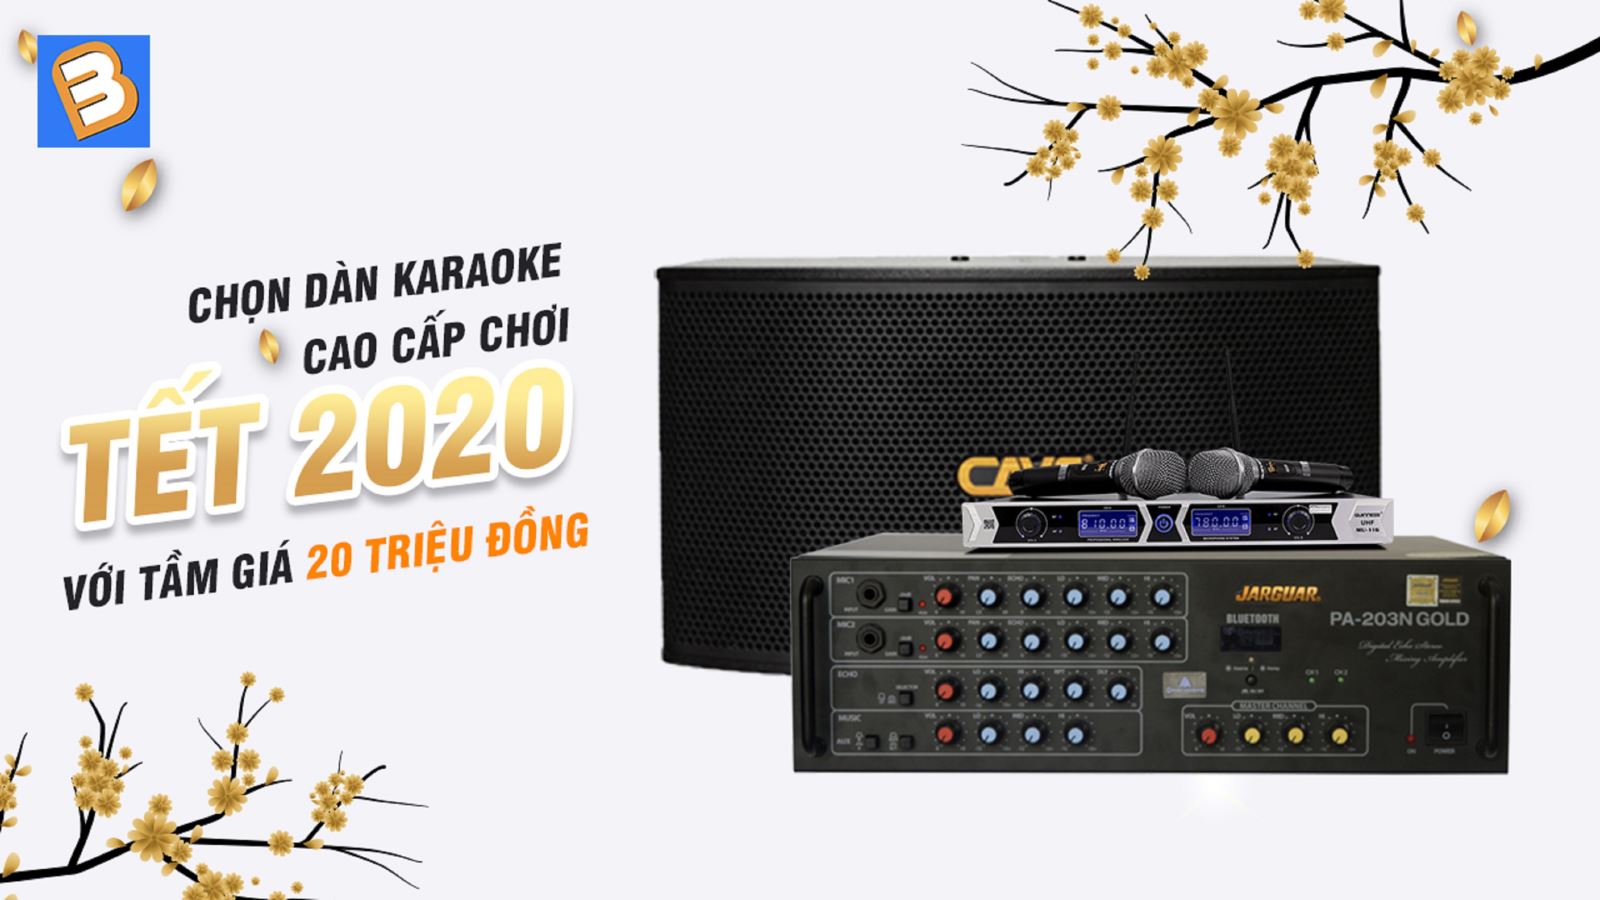 Chọn dàn karaoke cao cấp chơi Tết 2020 với tầm giá 20 triệu đồng